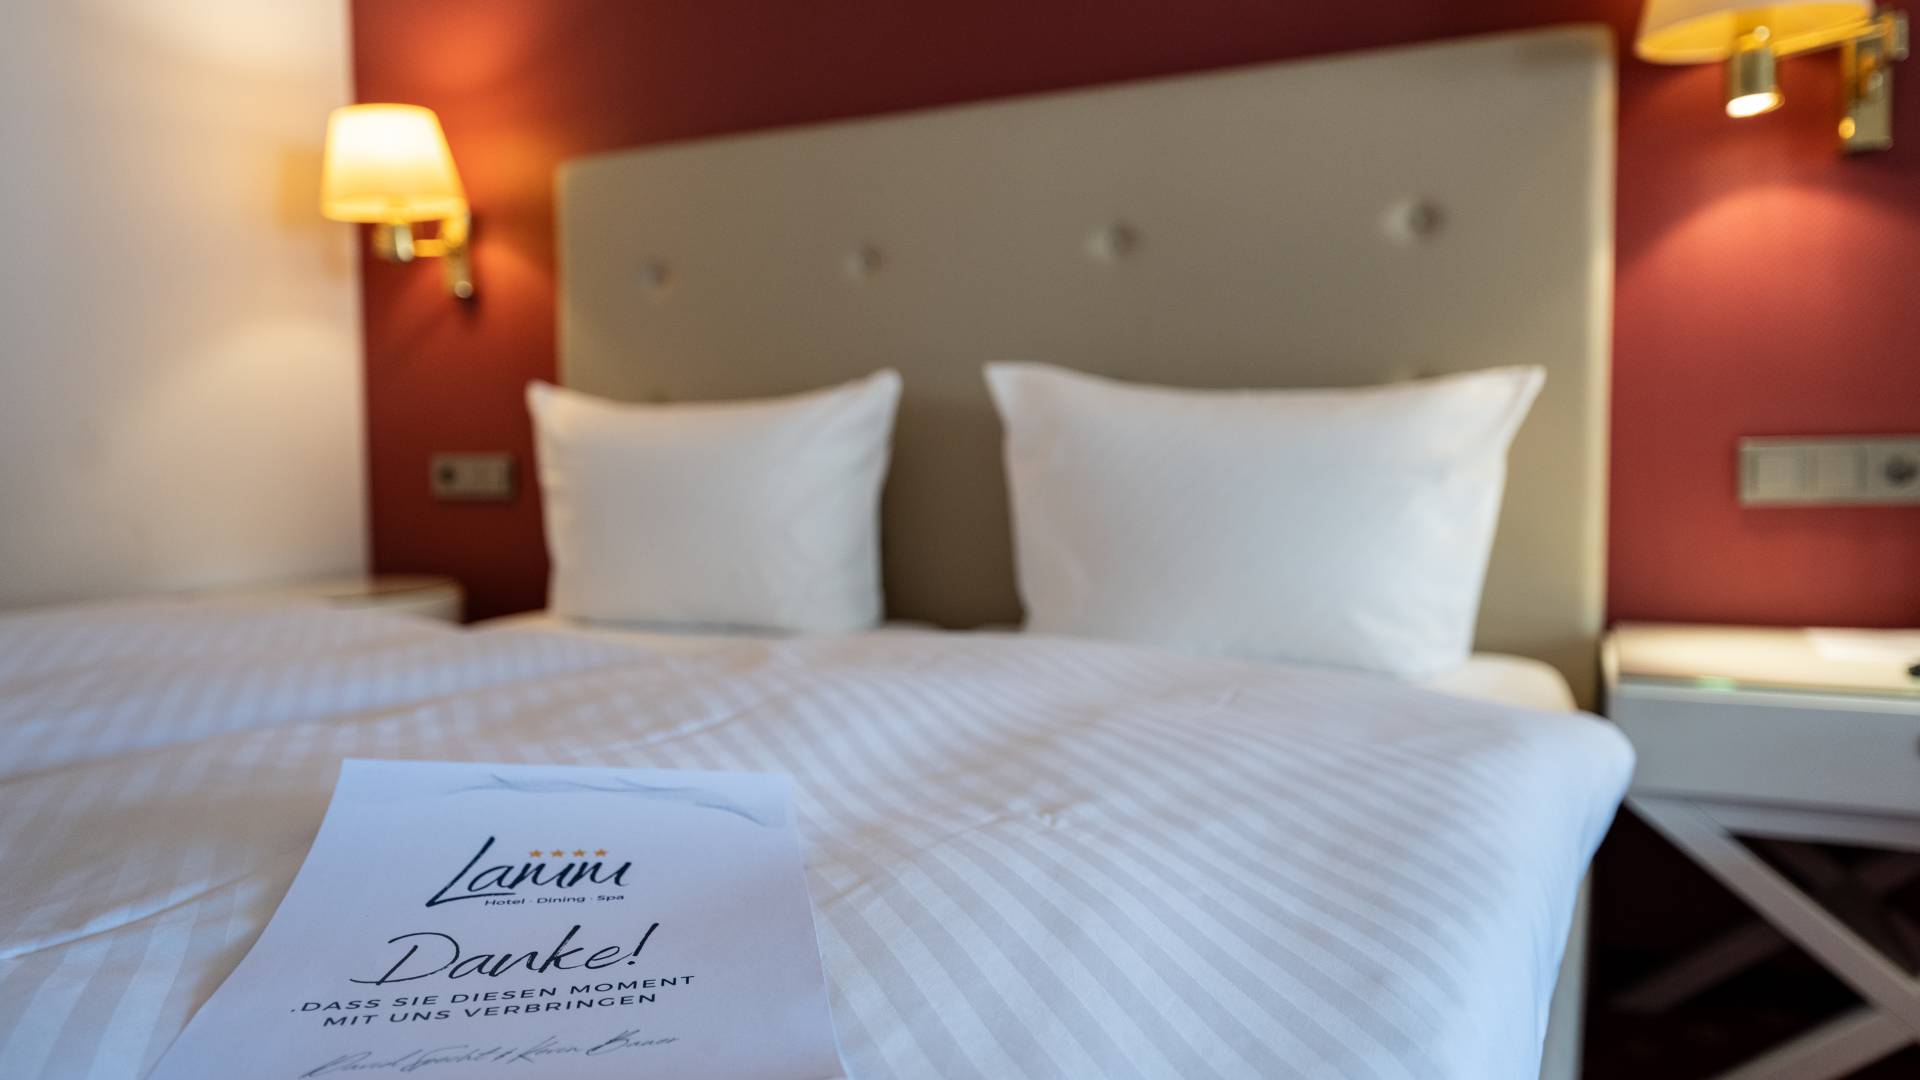 Hotelbett mit Danksagung auf dem Bett